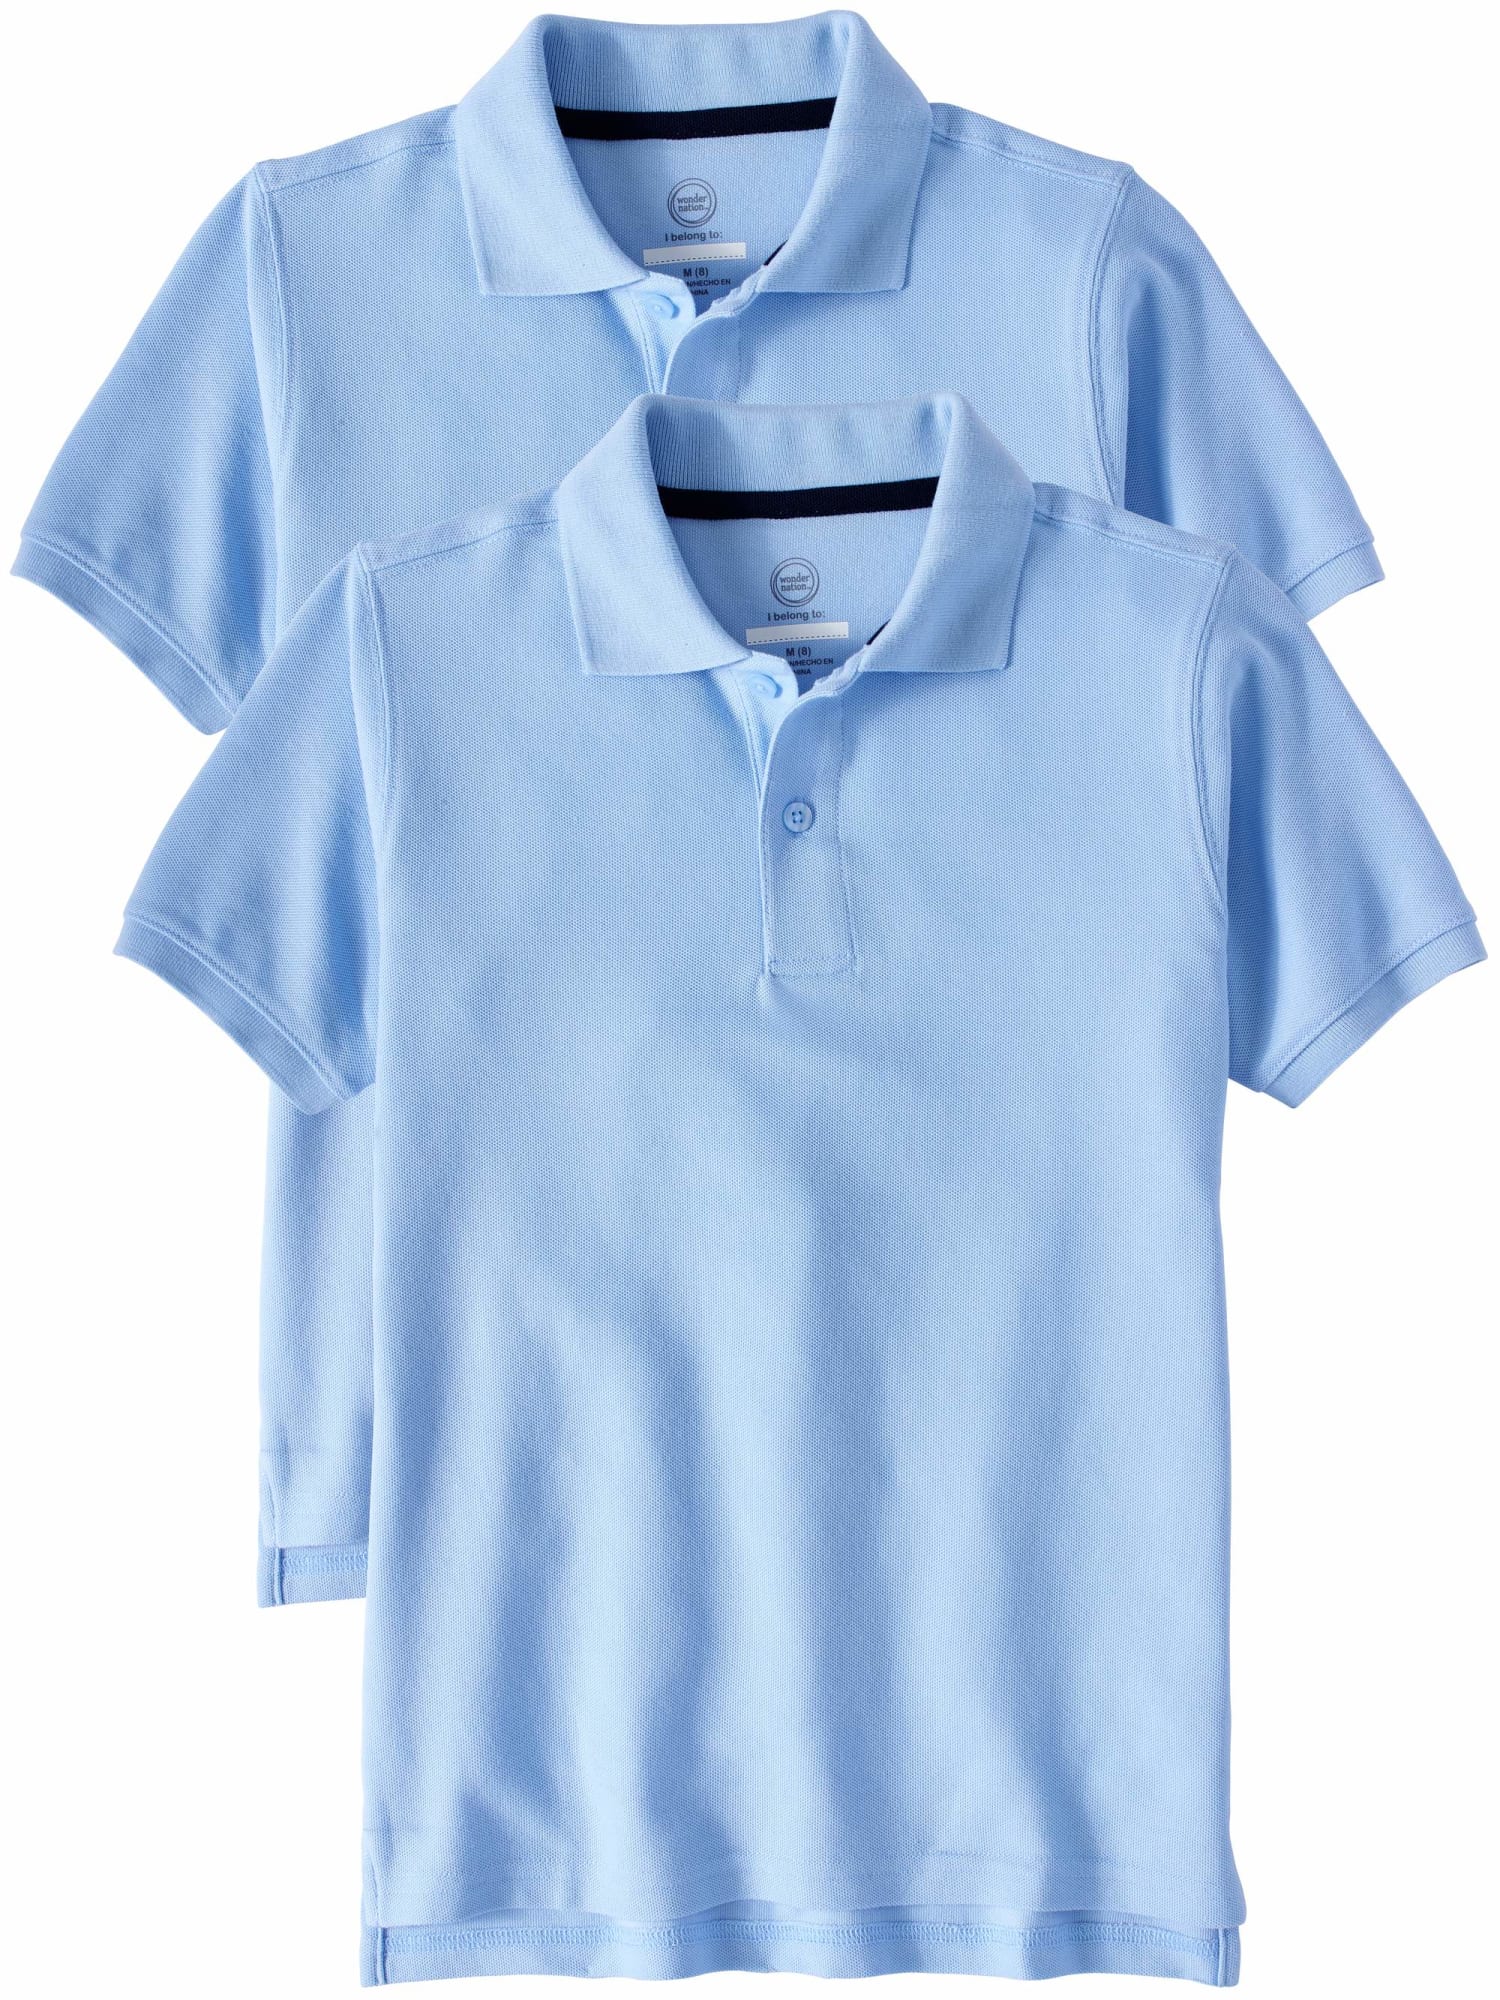 Essentials Boys Short-Sleeve Uniform Pique Polo